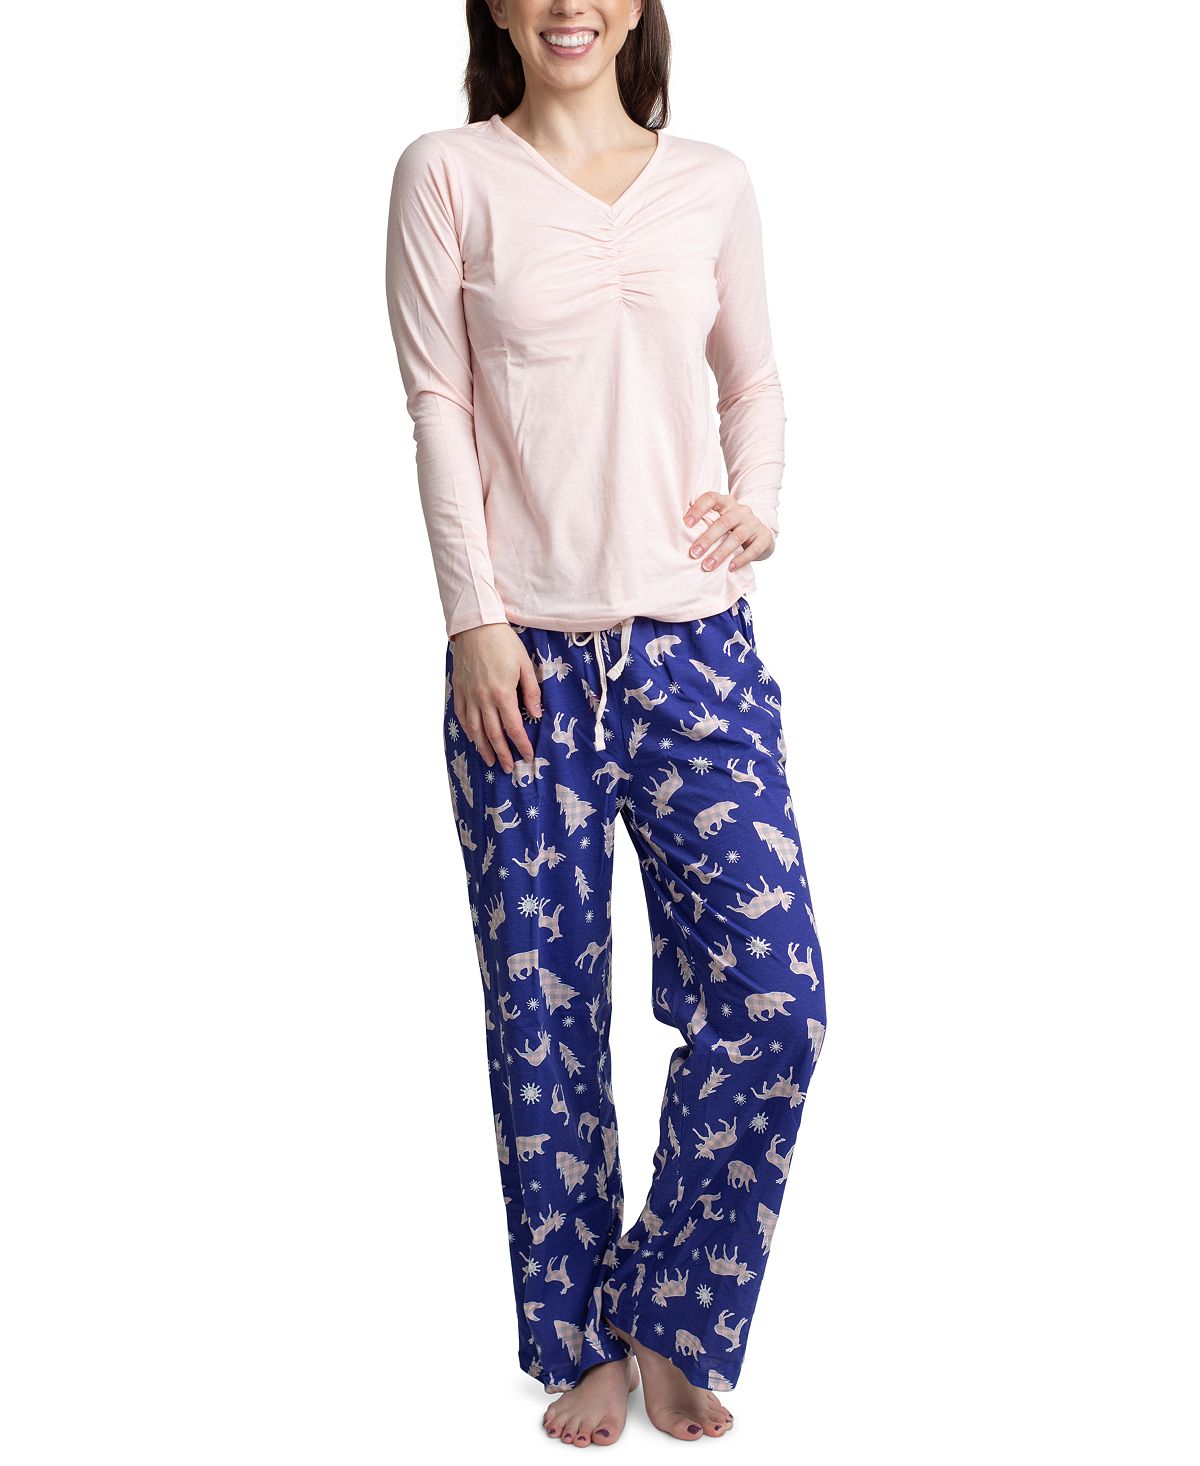 Muk Luks Top Pants & Boxer Shorts 3pc Pajama Gift Set Pink Tree